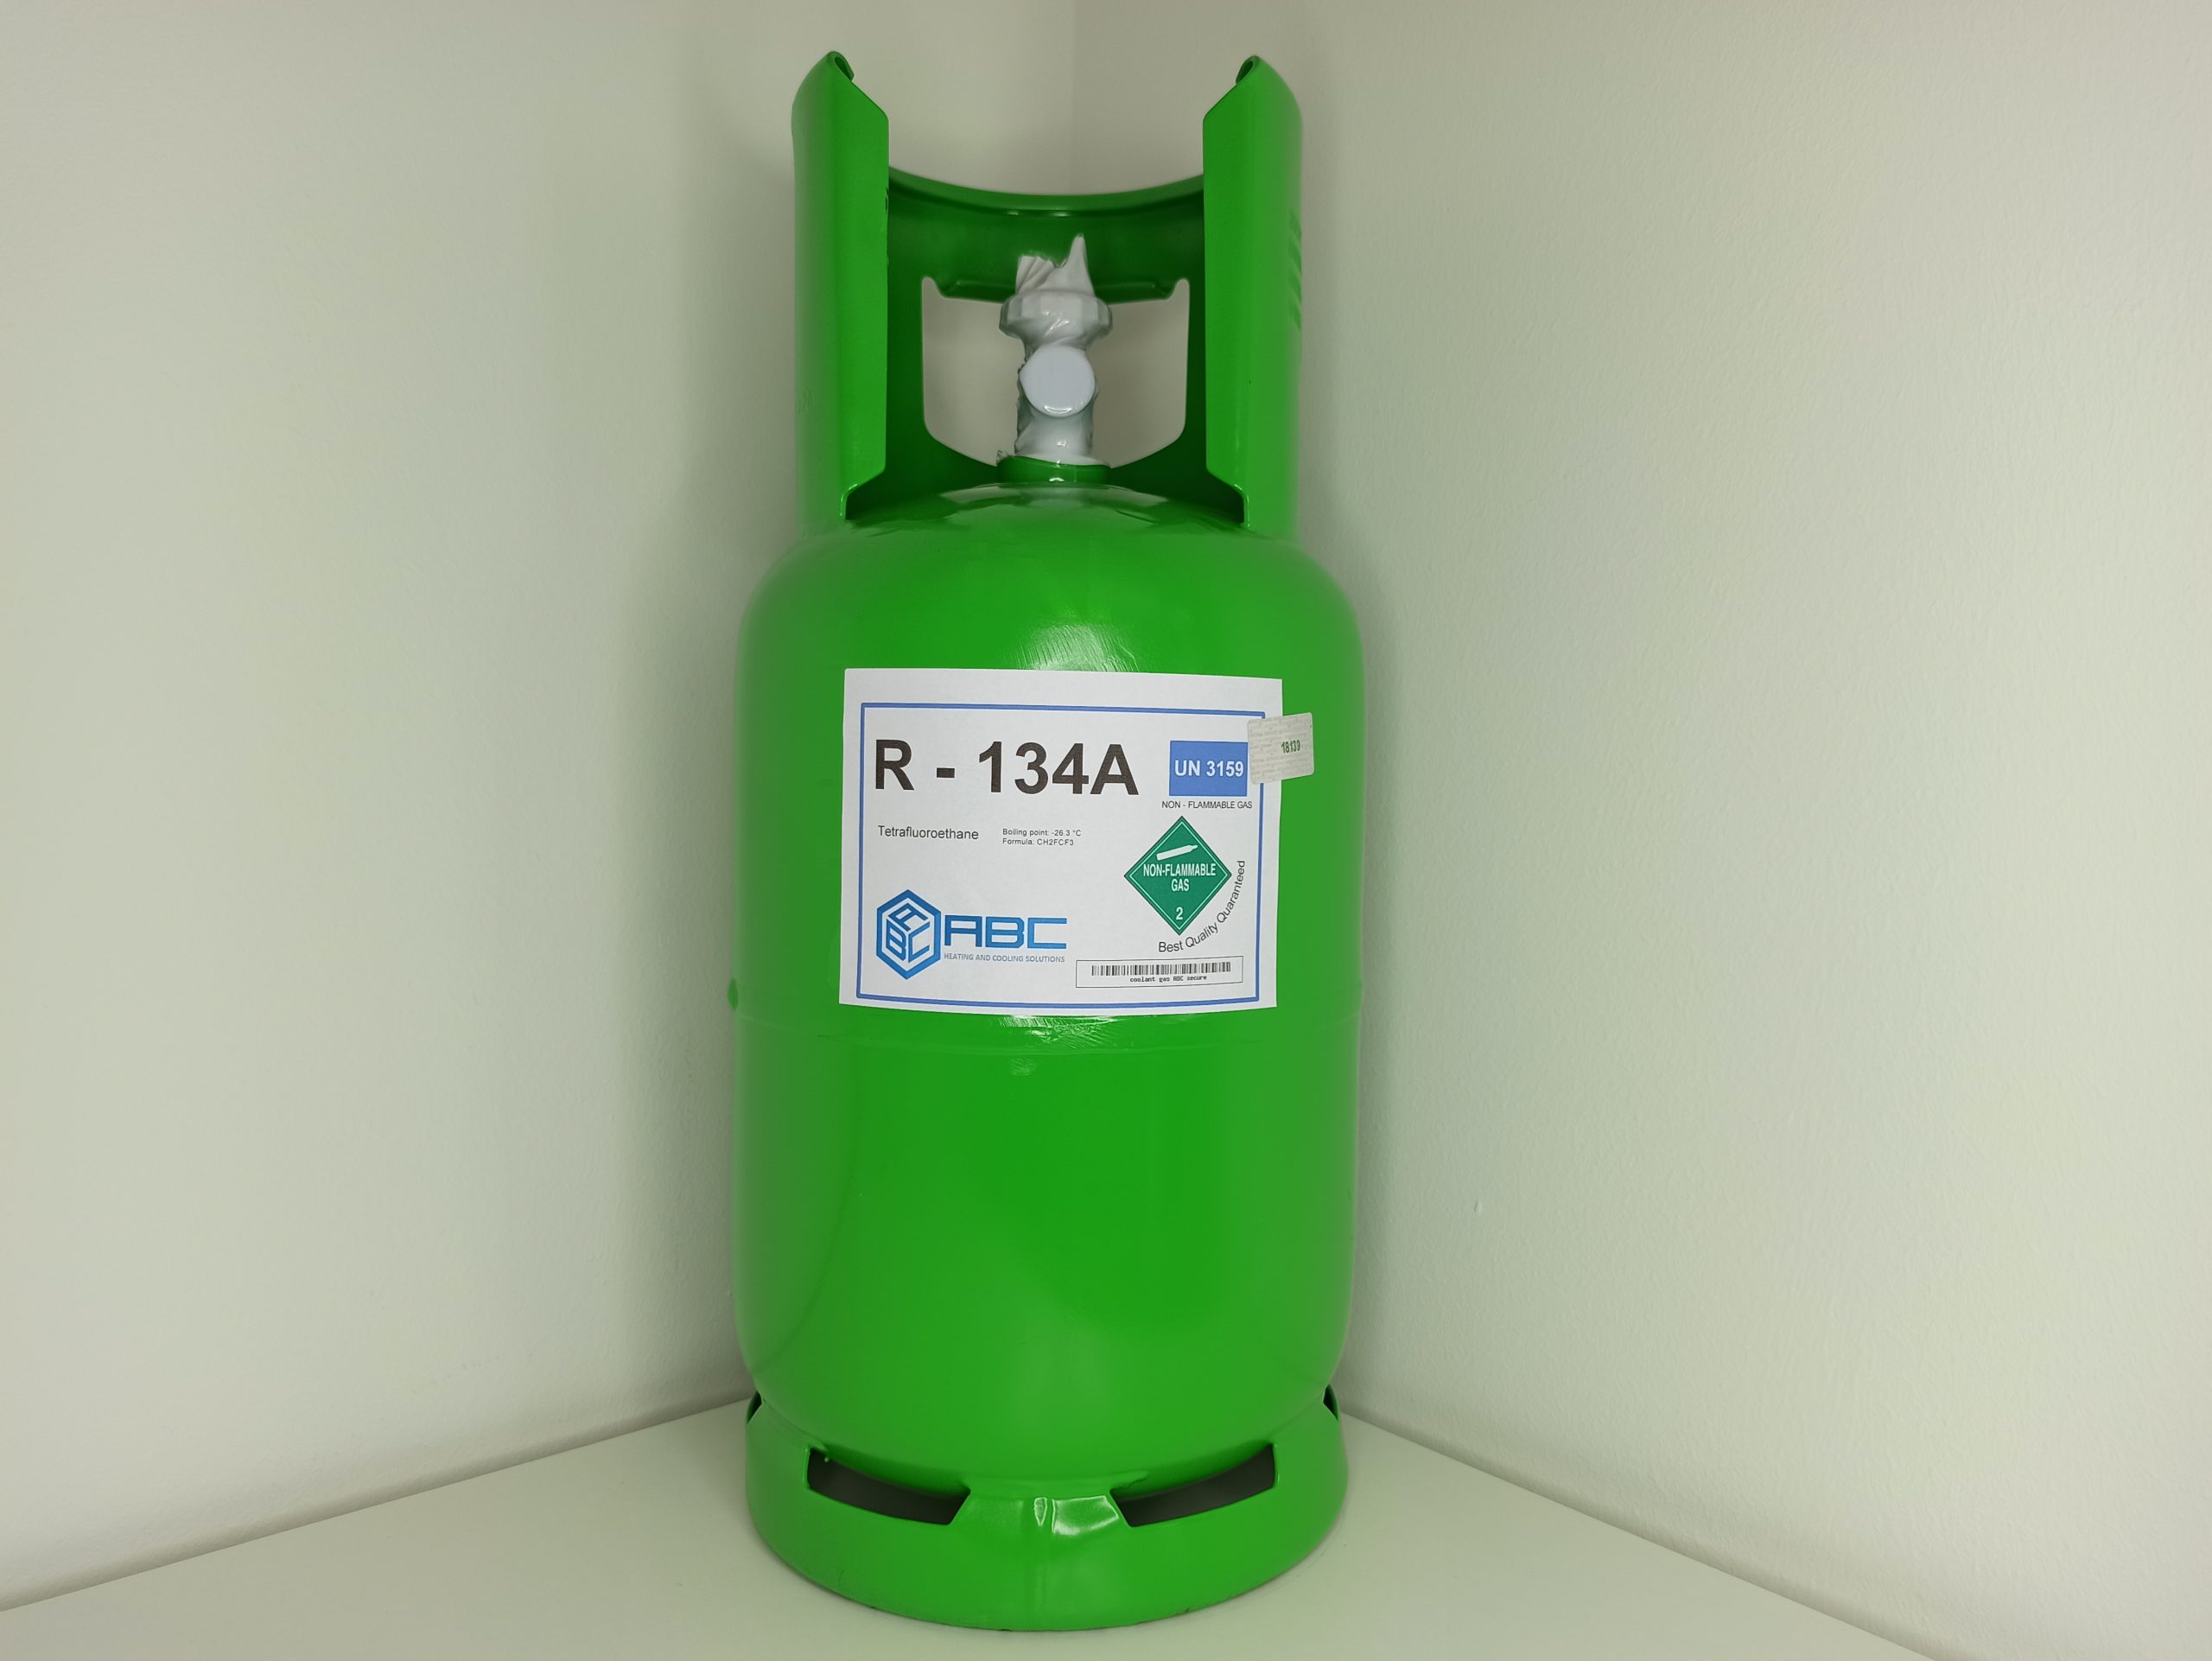 R134a R134 5 Kg refrigerant gaz bouteille rechargeable